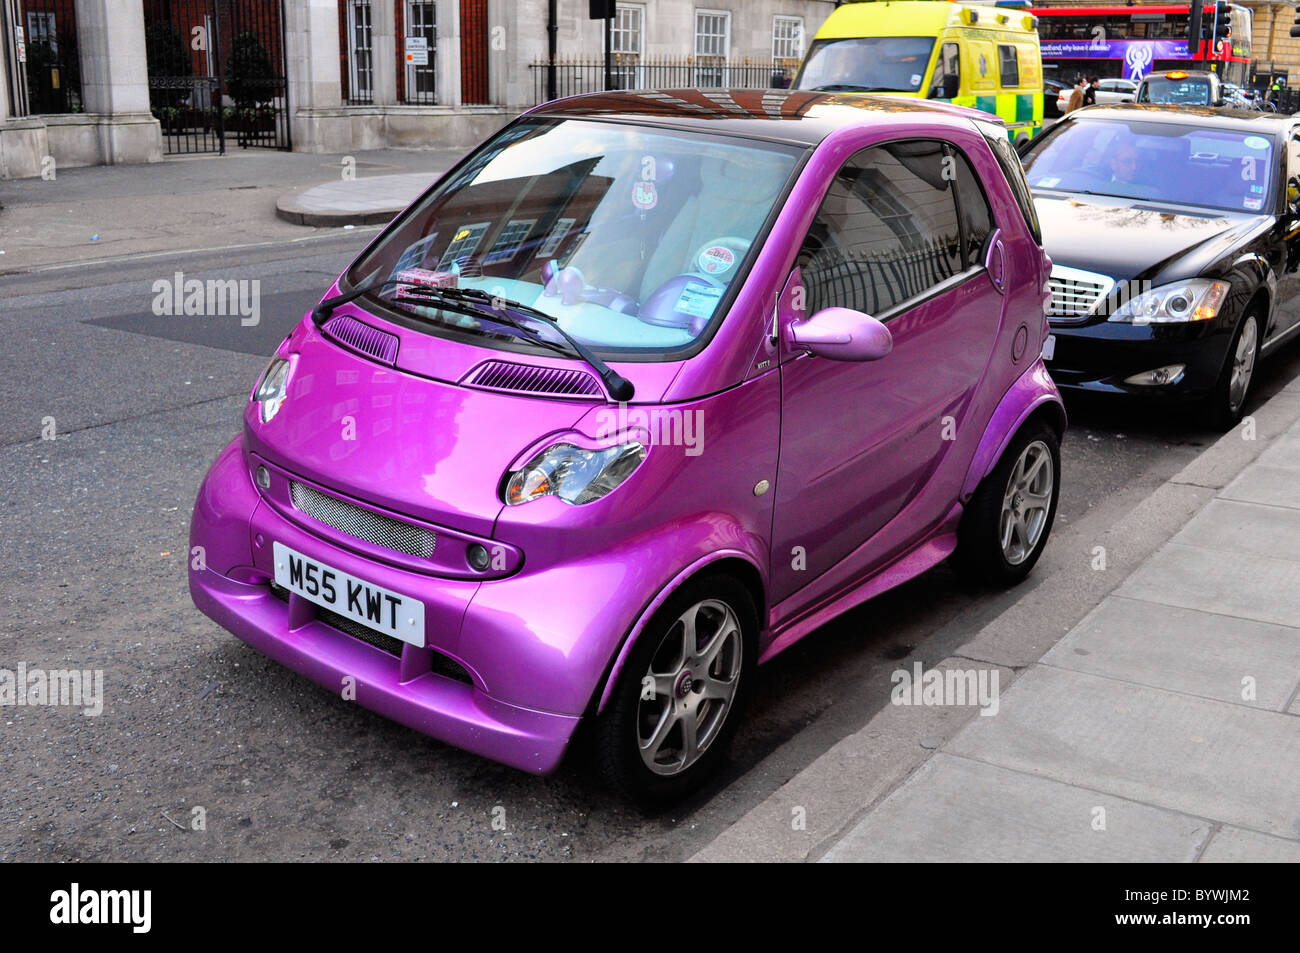 Pink smart car immagini e fotografie stock ad alta risoluzione - Alamy